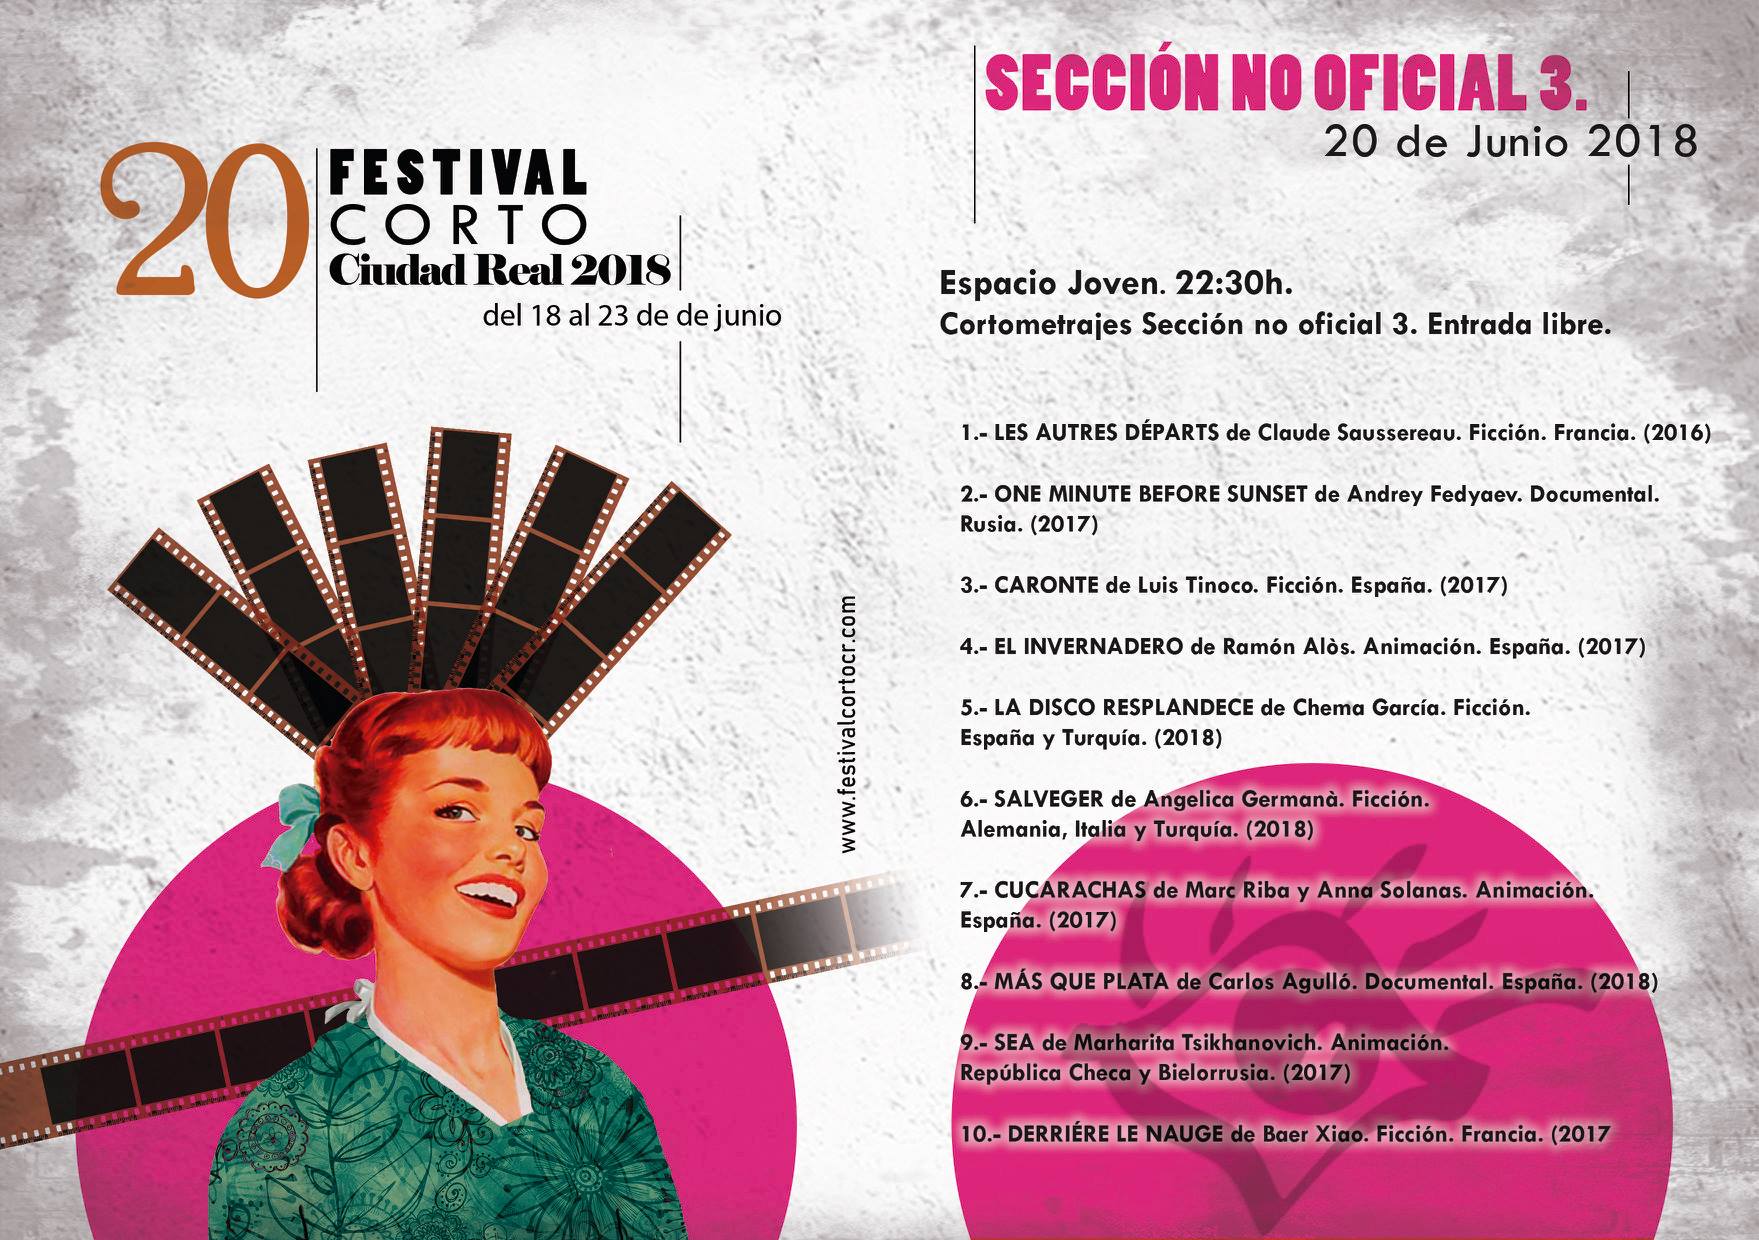 Sección no oficial 2018 - Festival Corto Ciudad Real